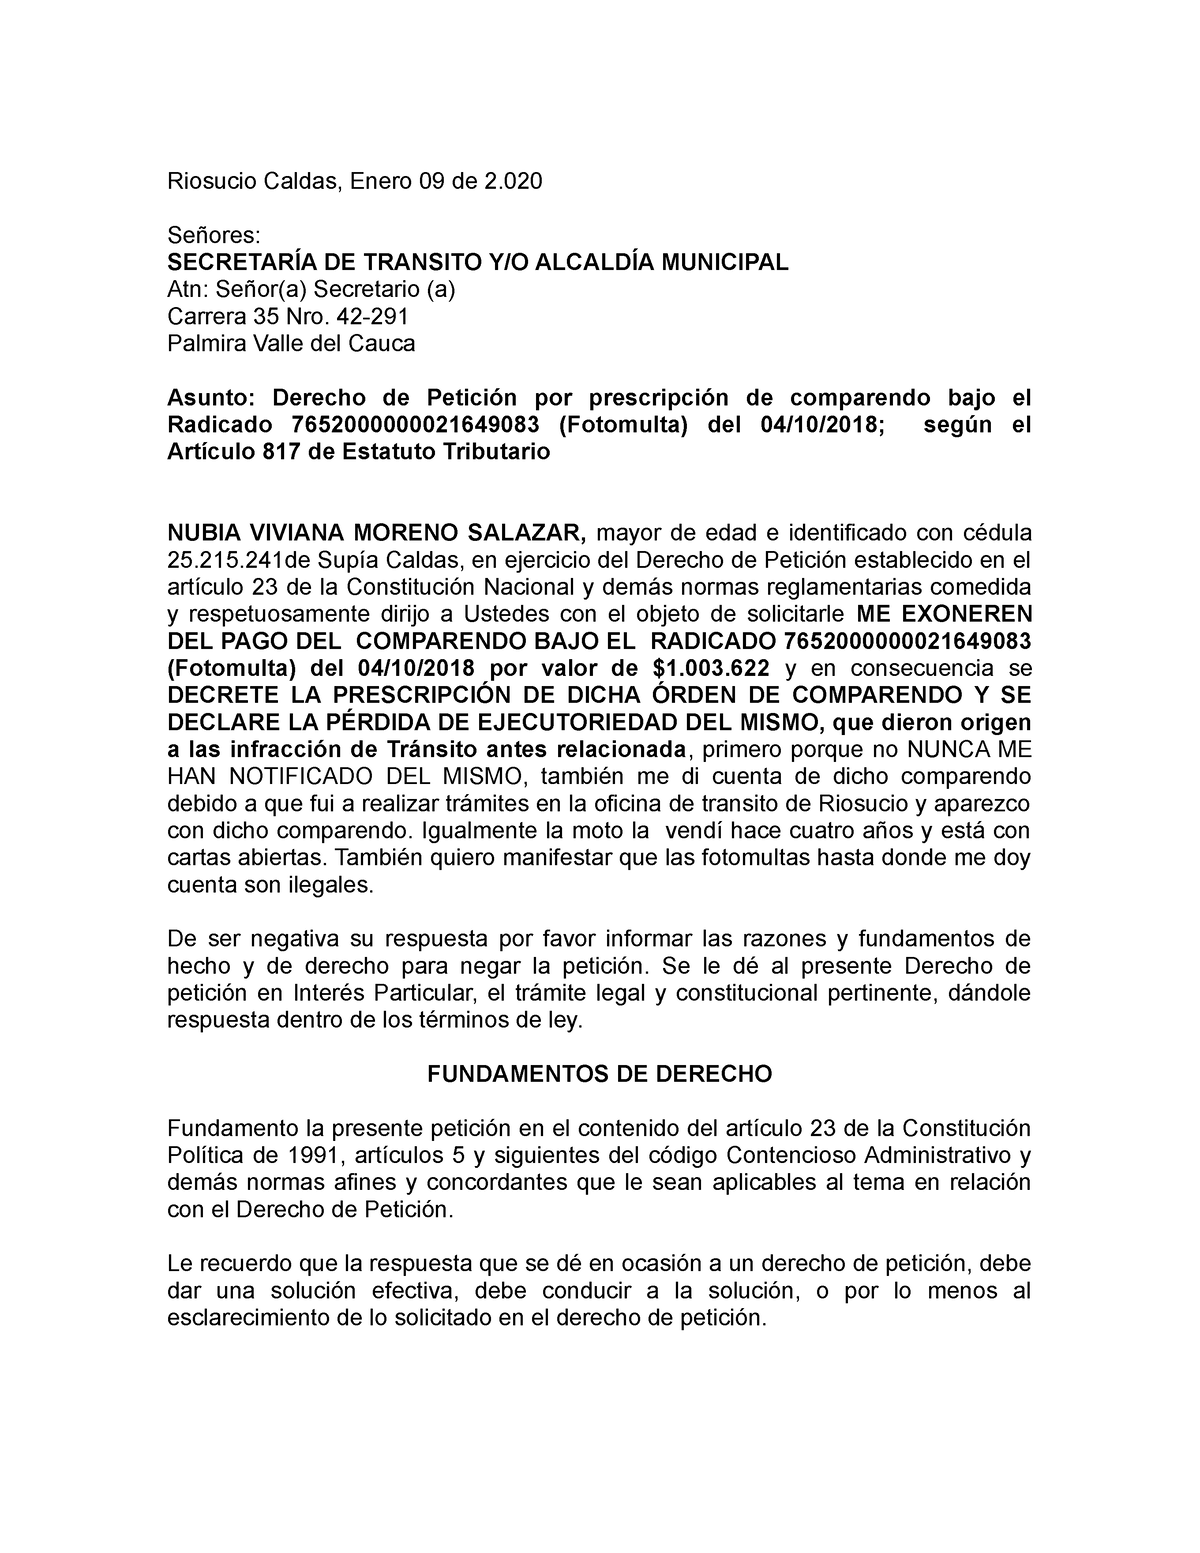 Derecho DE Petición 005-2020 Nubia Viviana Moreno Salazar ( Transito ...